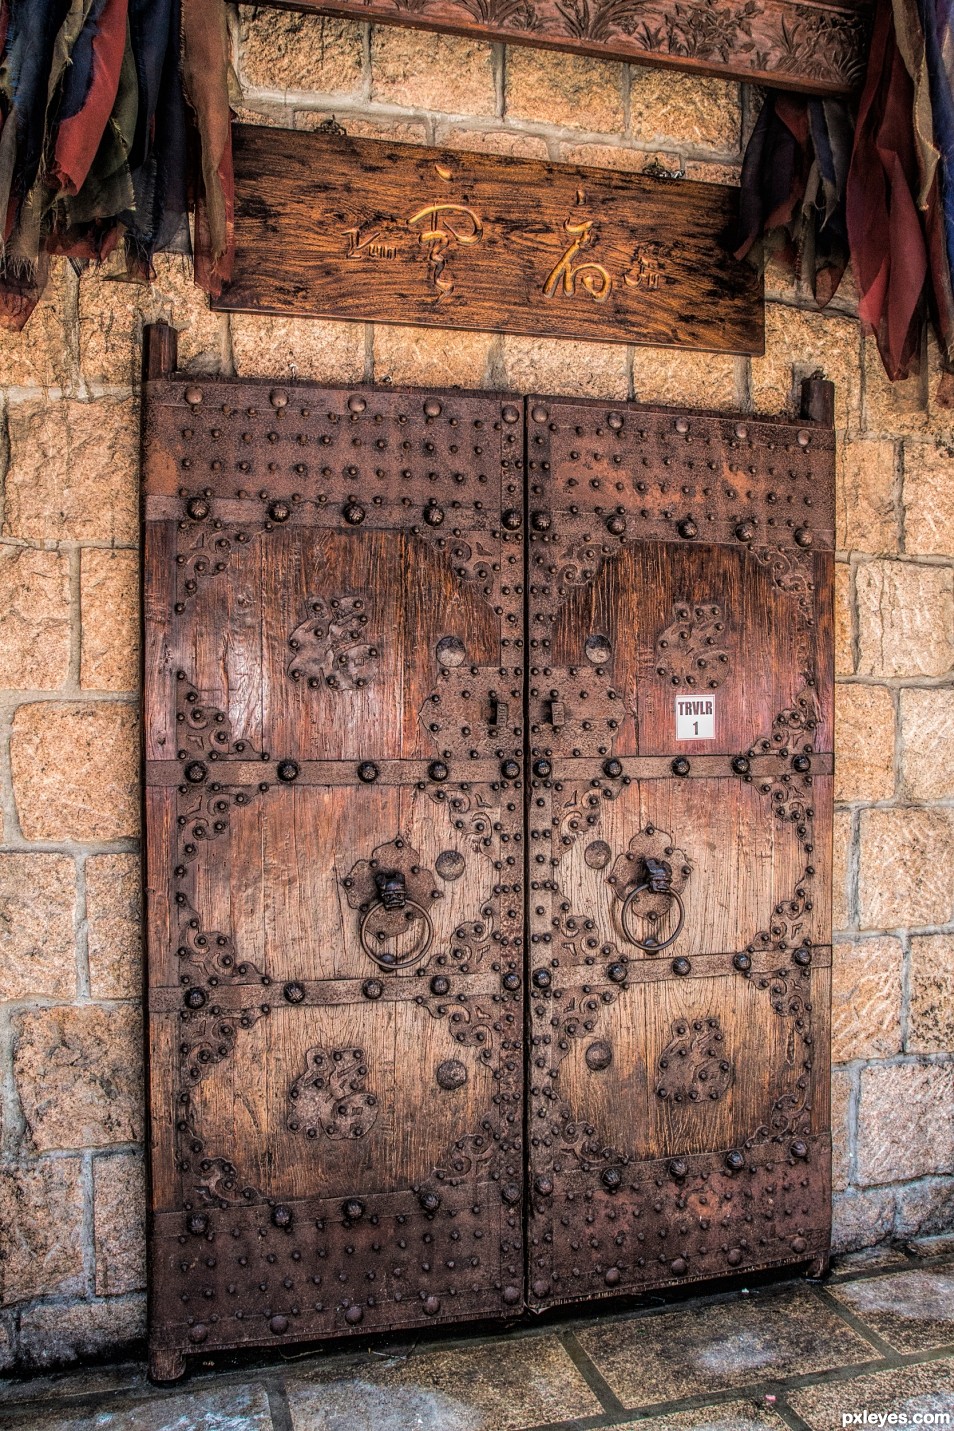 A very old door